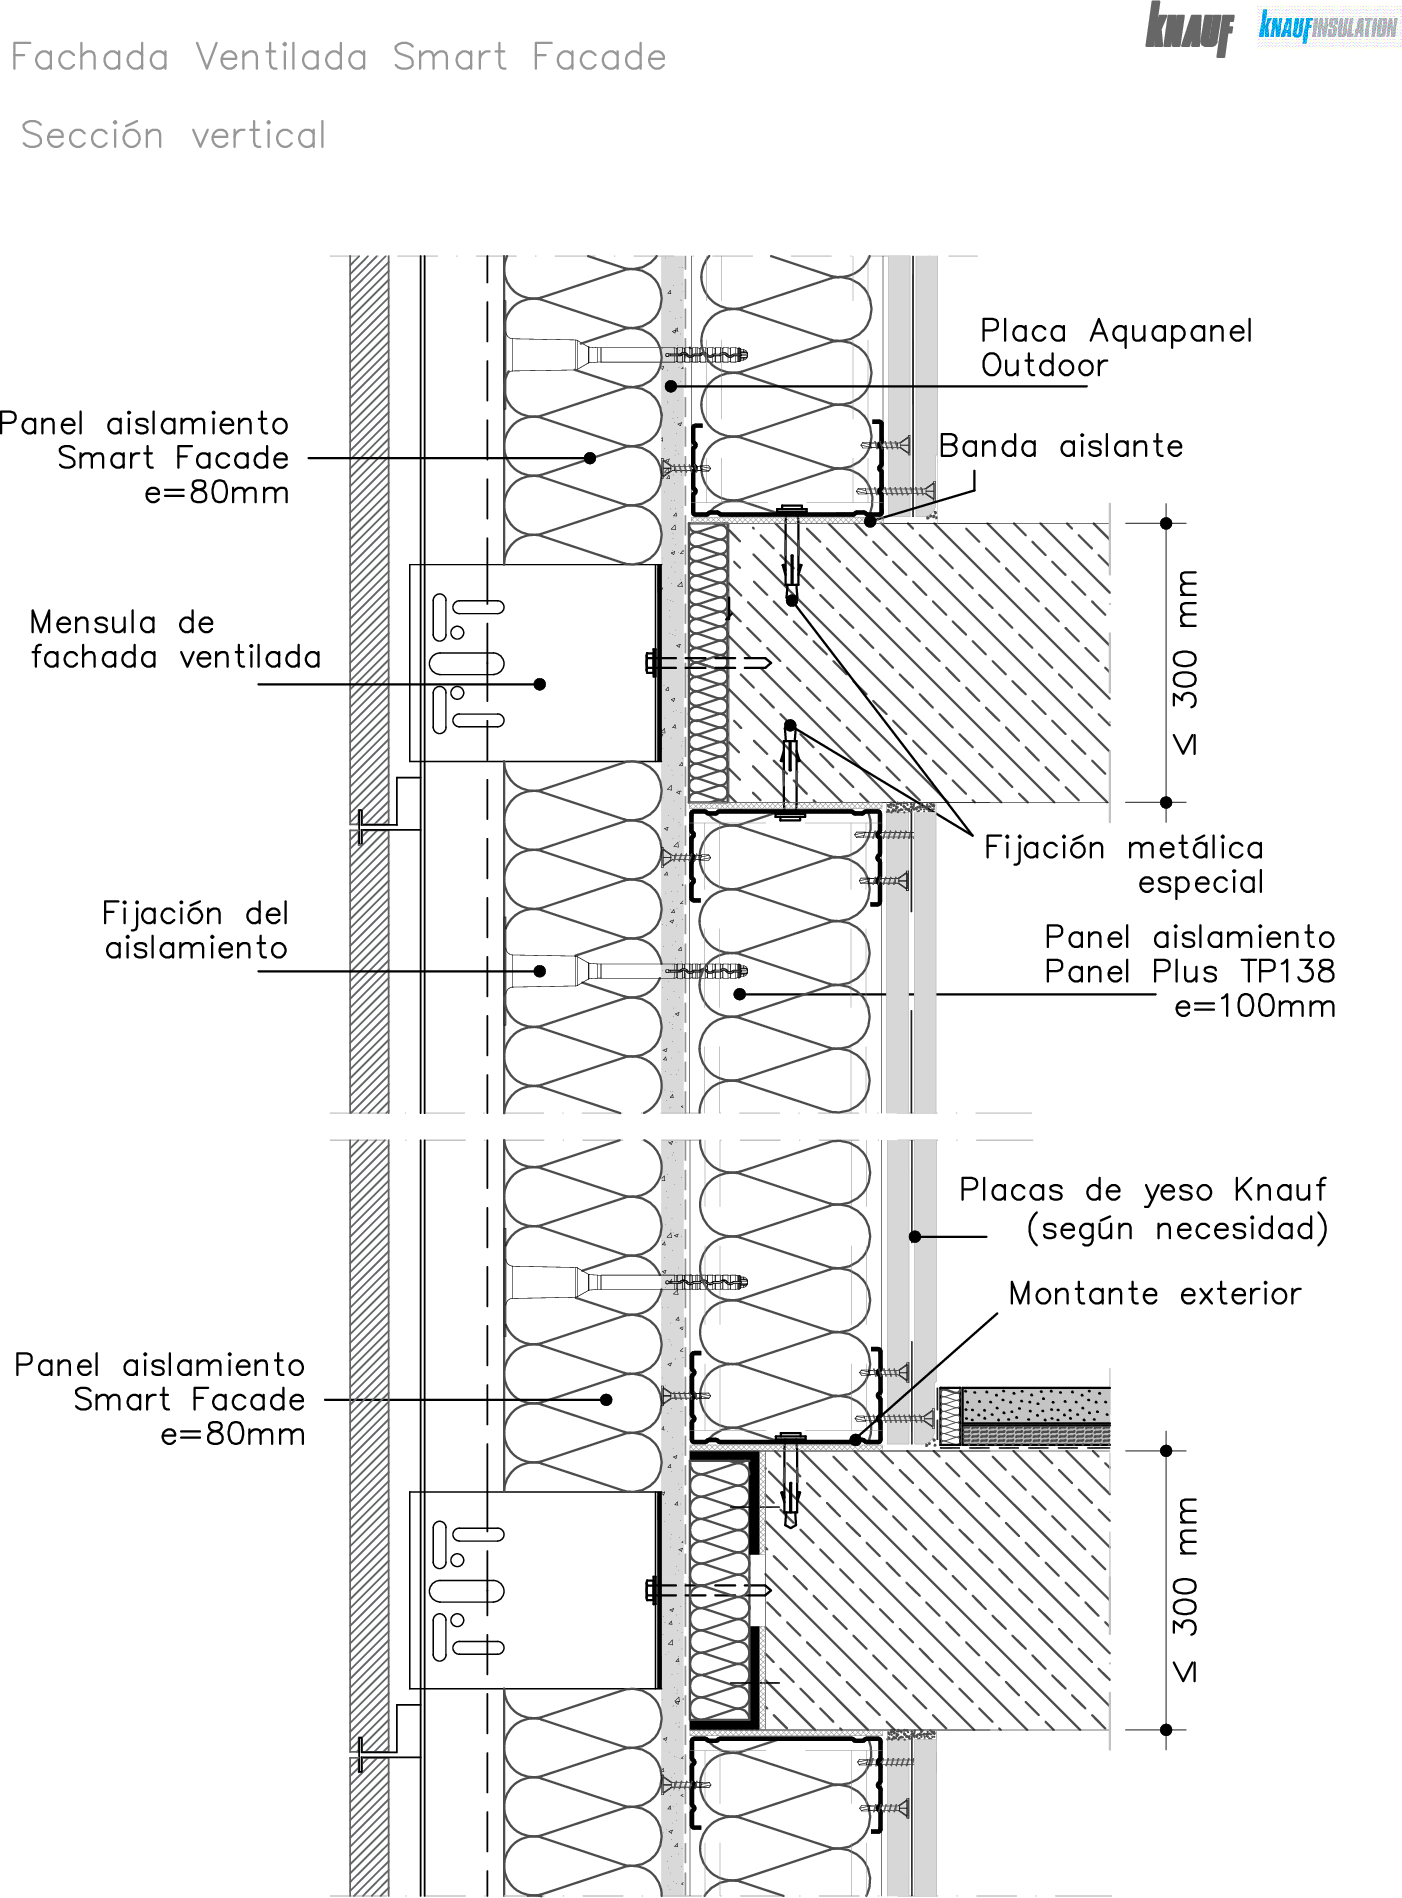 Fachada ligera ventilada Smart Facade - seccion vertical